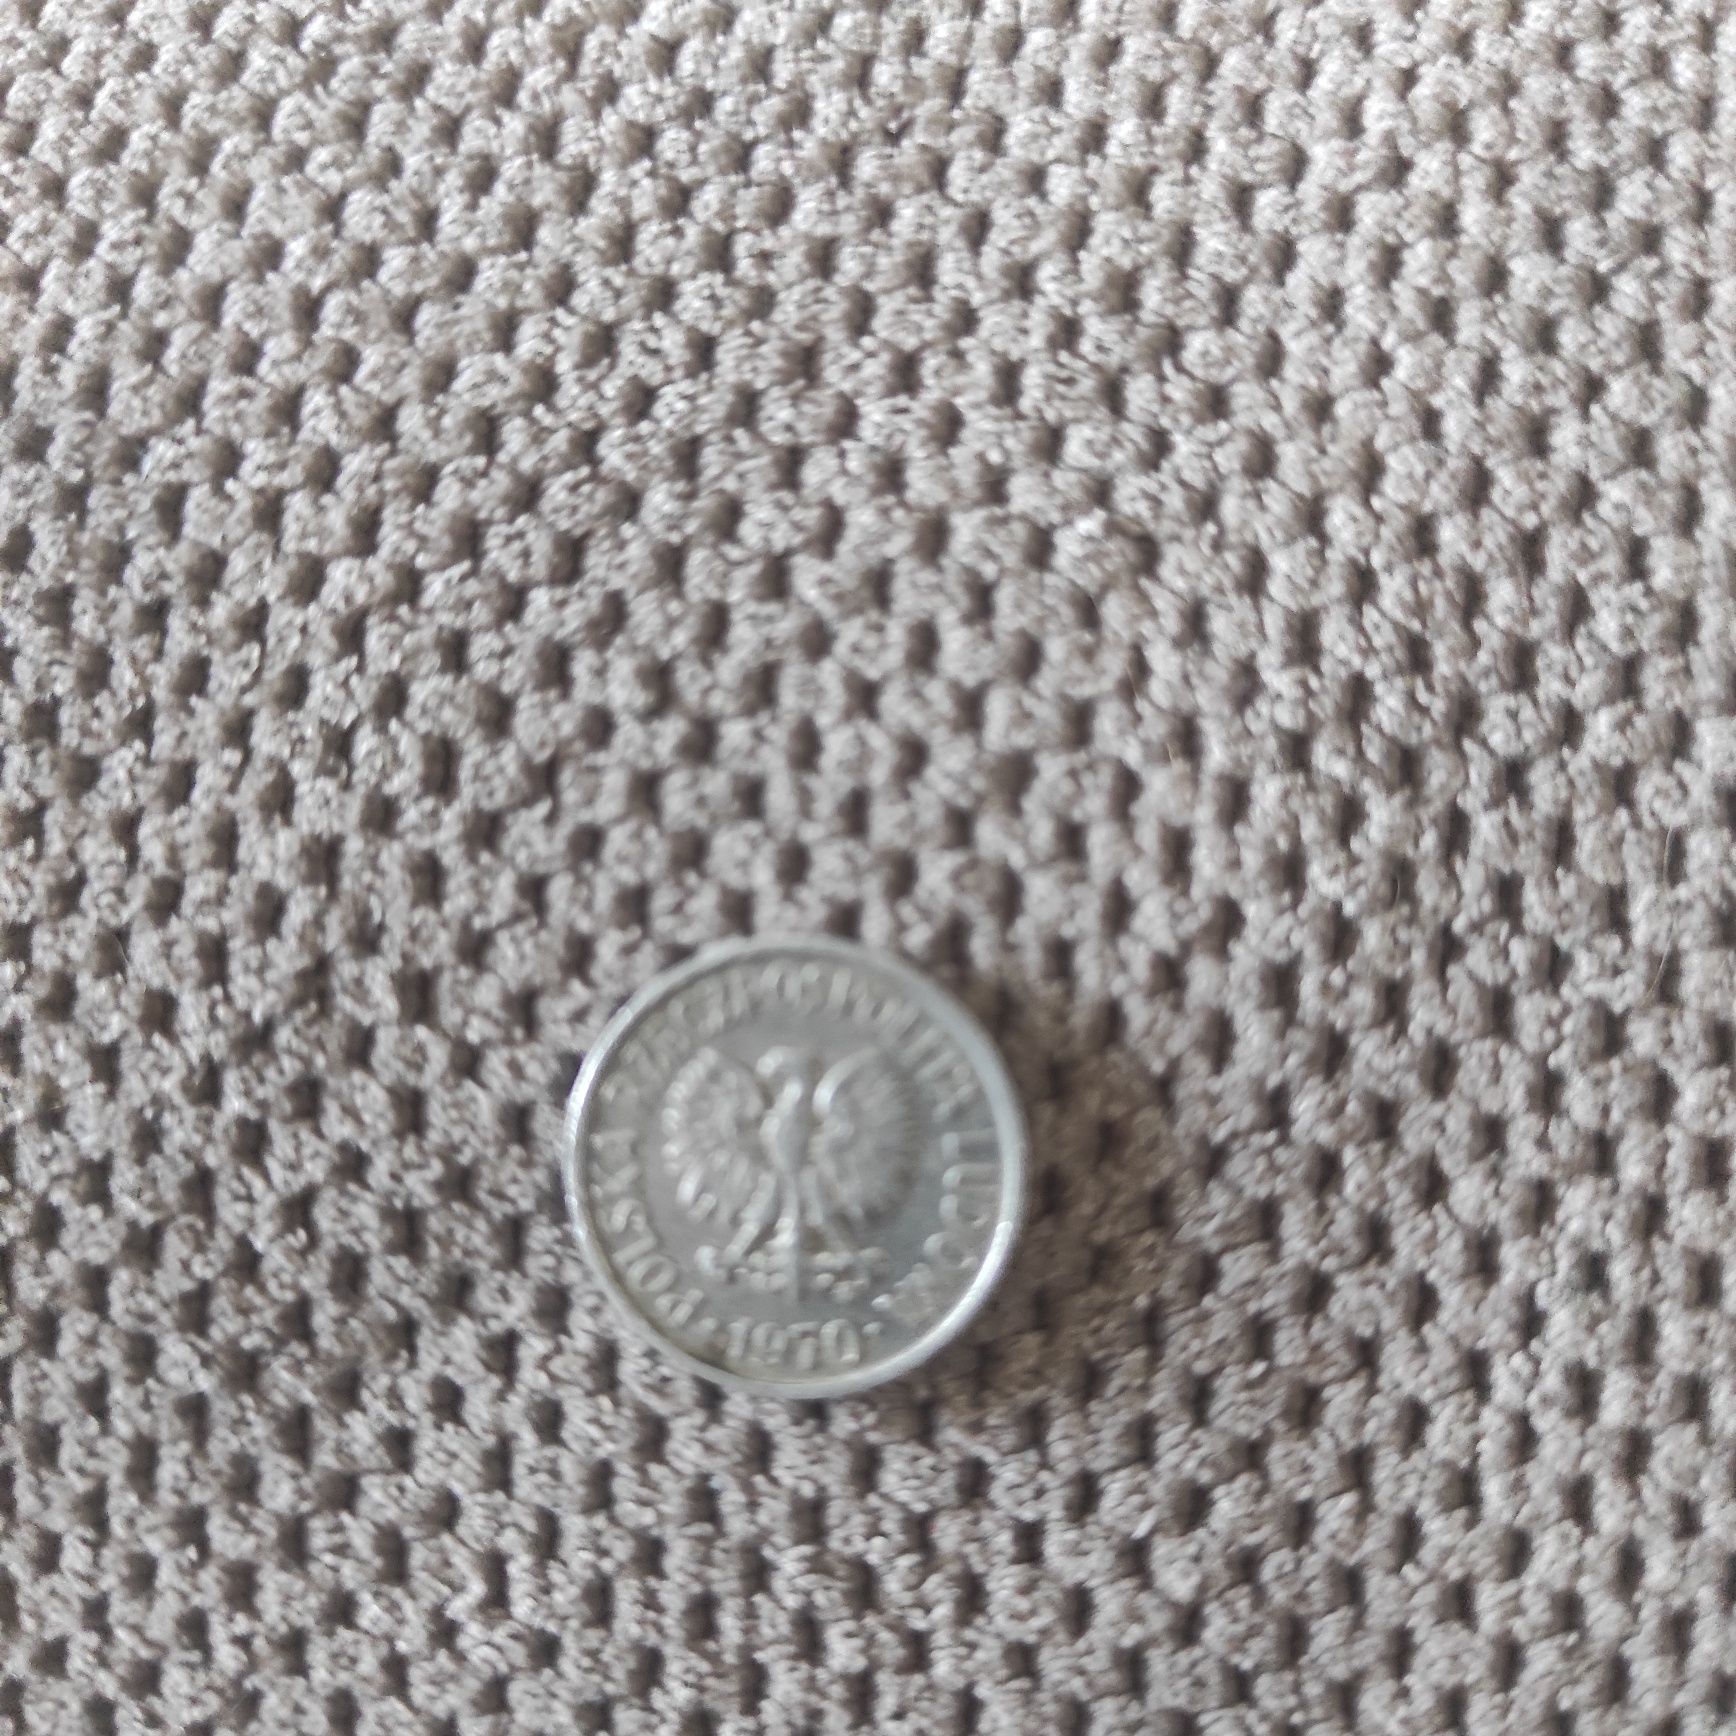 Moneta 5gr z 1970